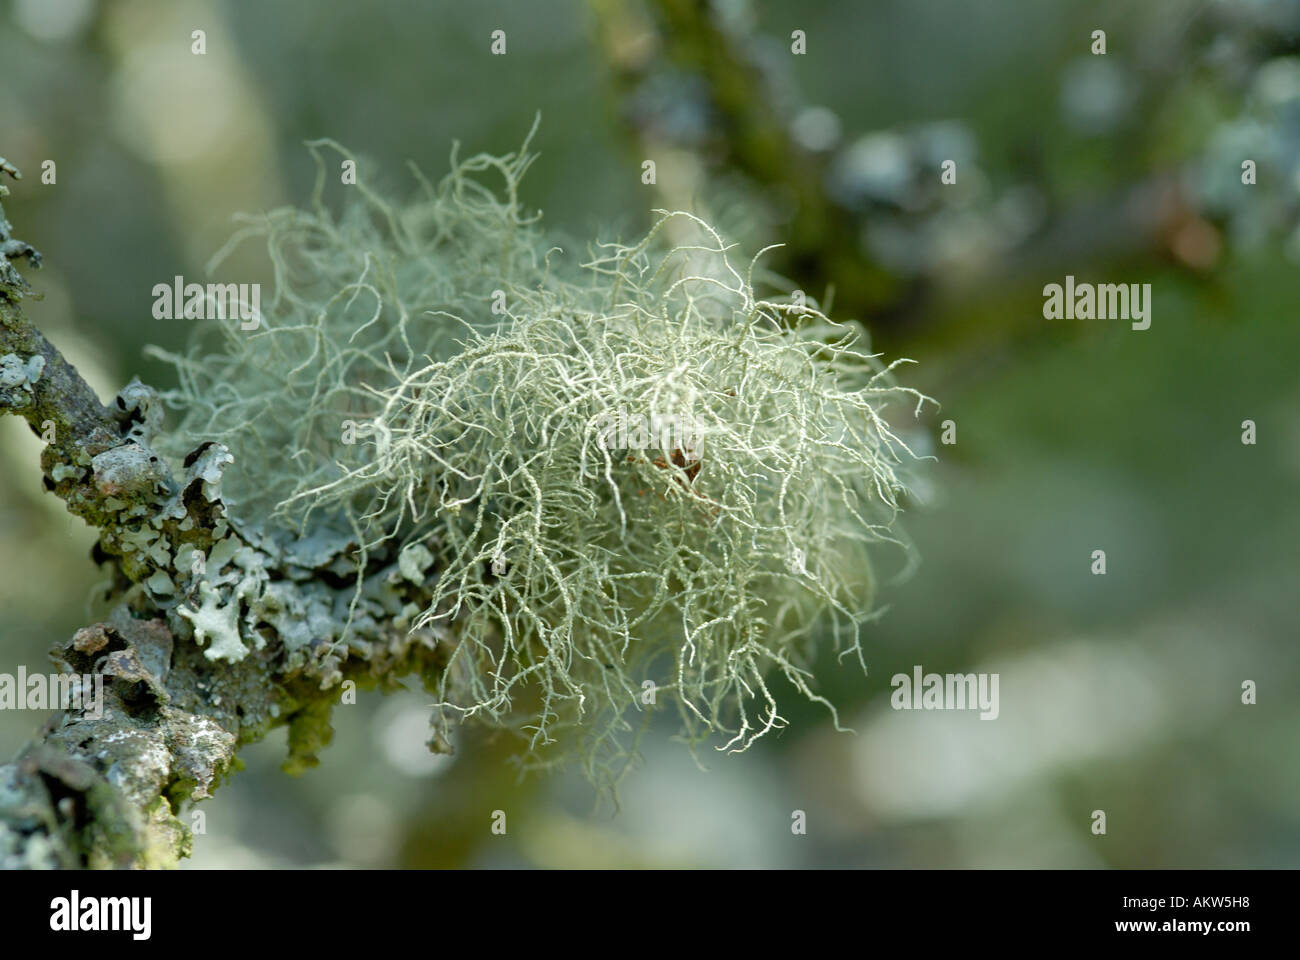 A shaggy lichen Usnea species growing on a tree branch Harrison s Rocks Groombridge Kent UK Stock Photo